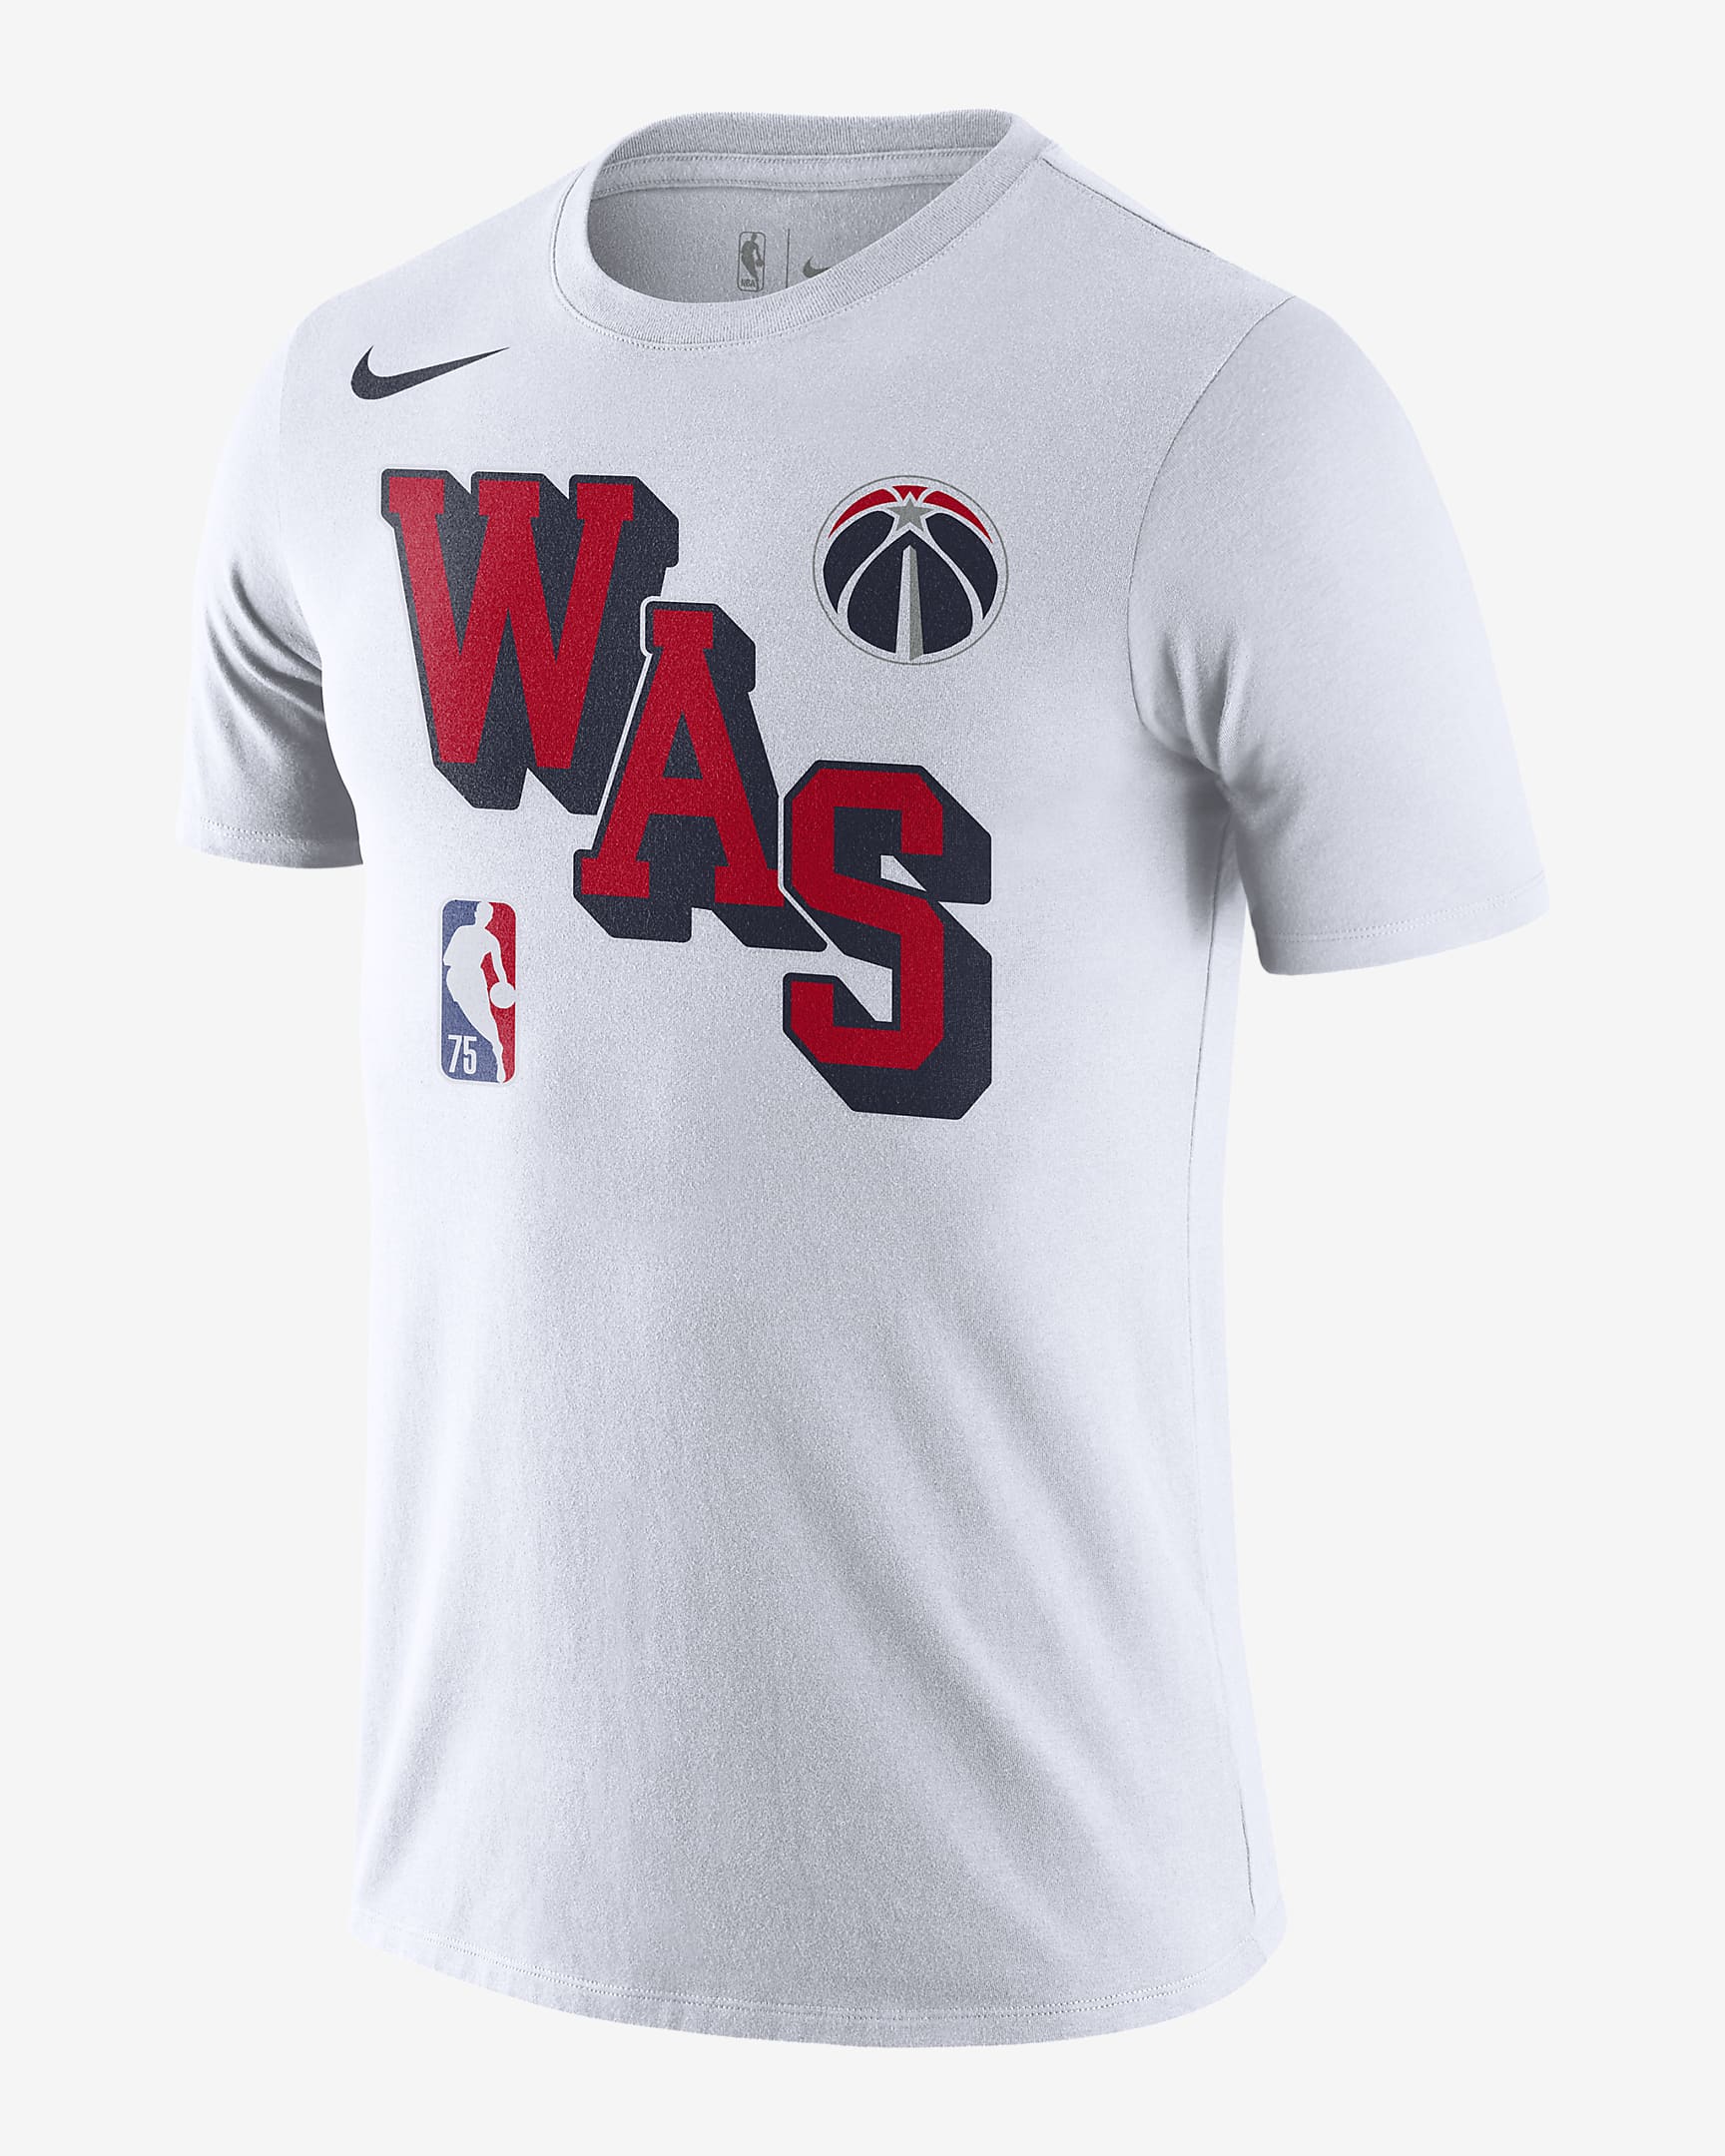 Washington Wizards Team Issued Nike Dri-Fit Medium Tall (MT